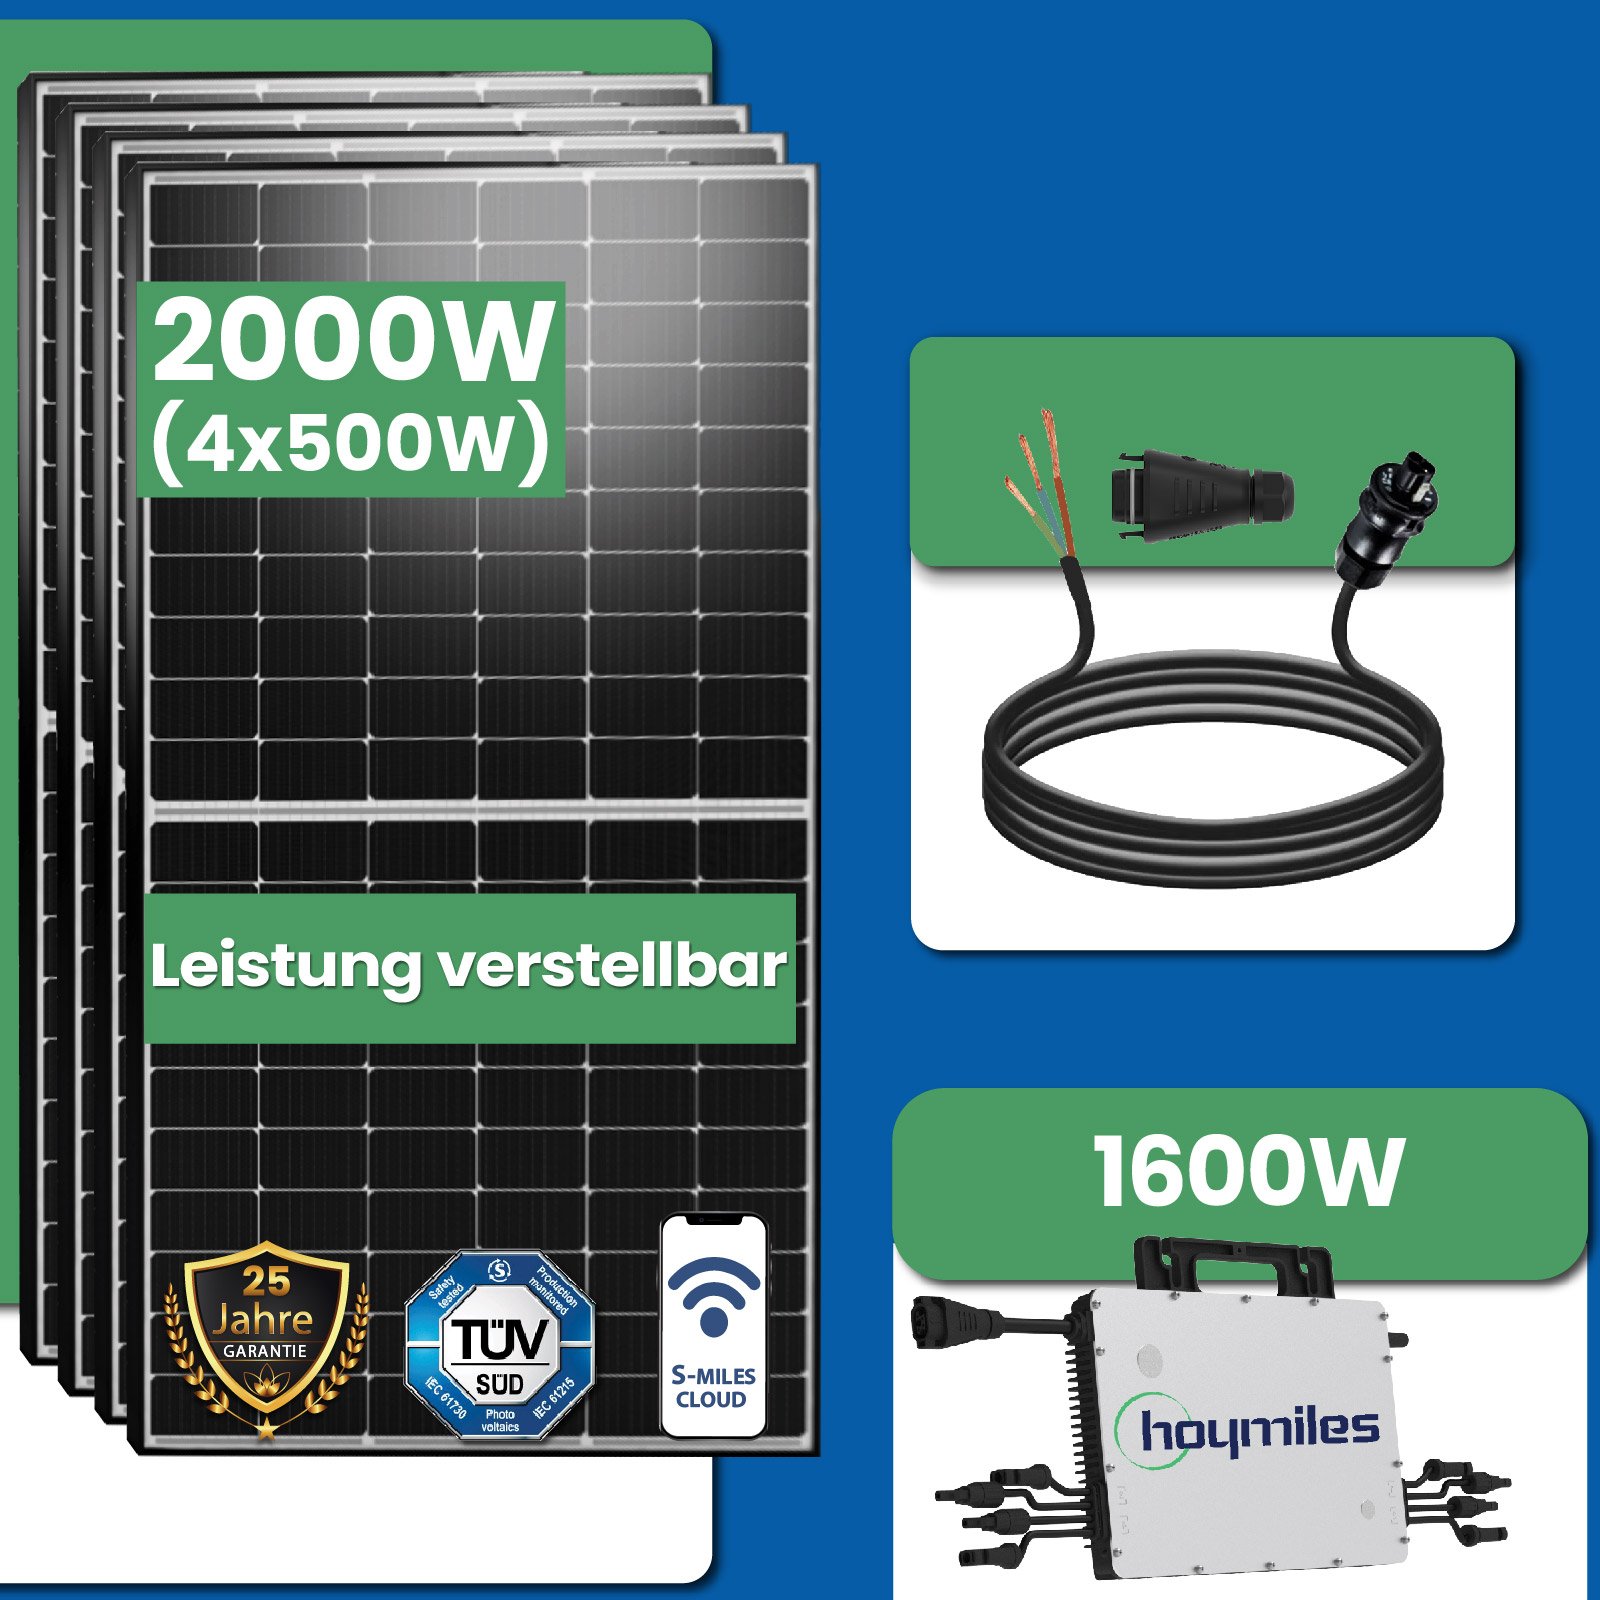 2000W Photovoltaik Balkonkraftwerk mit EPP 500W Solarmodule, Hoymiles  HMS-1600-4T Wechselrichter und DTU-WLite-S